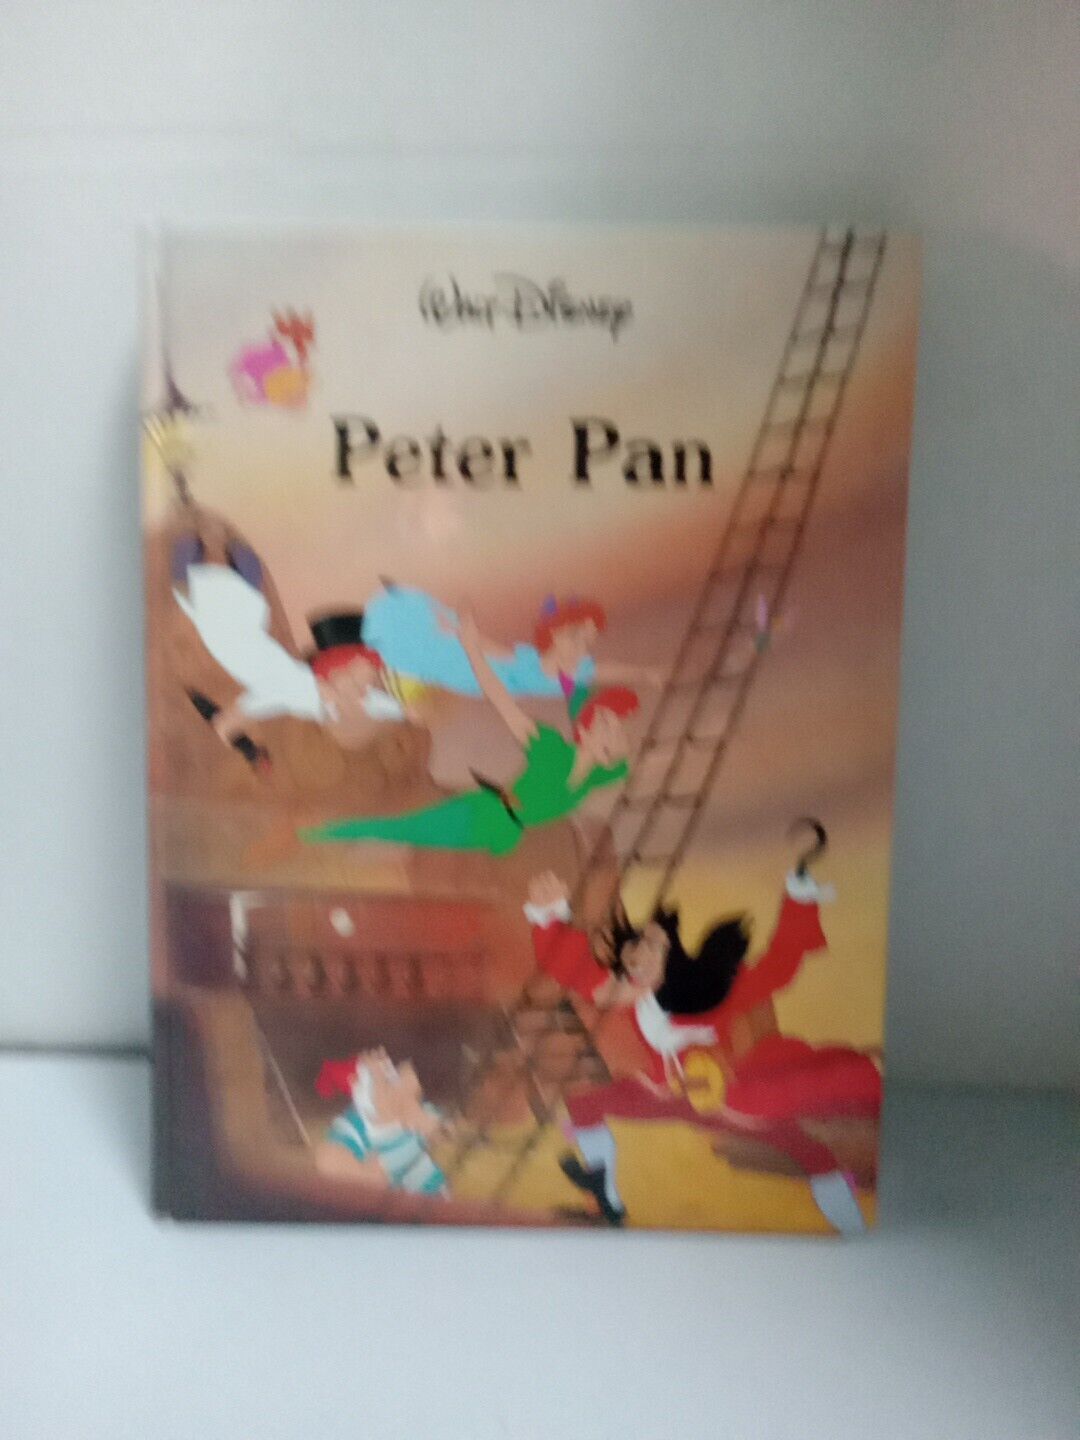 Vintage Peter Pan Walt Disney 1986 hardcover book 